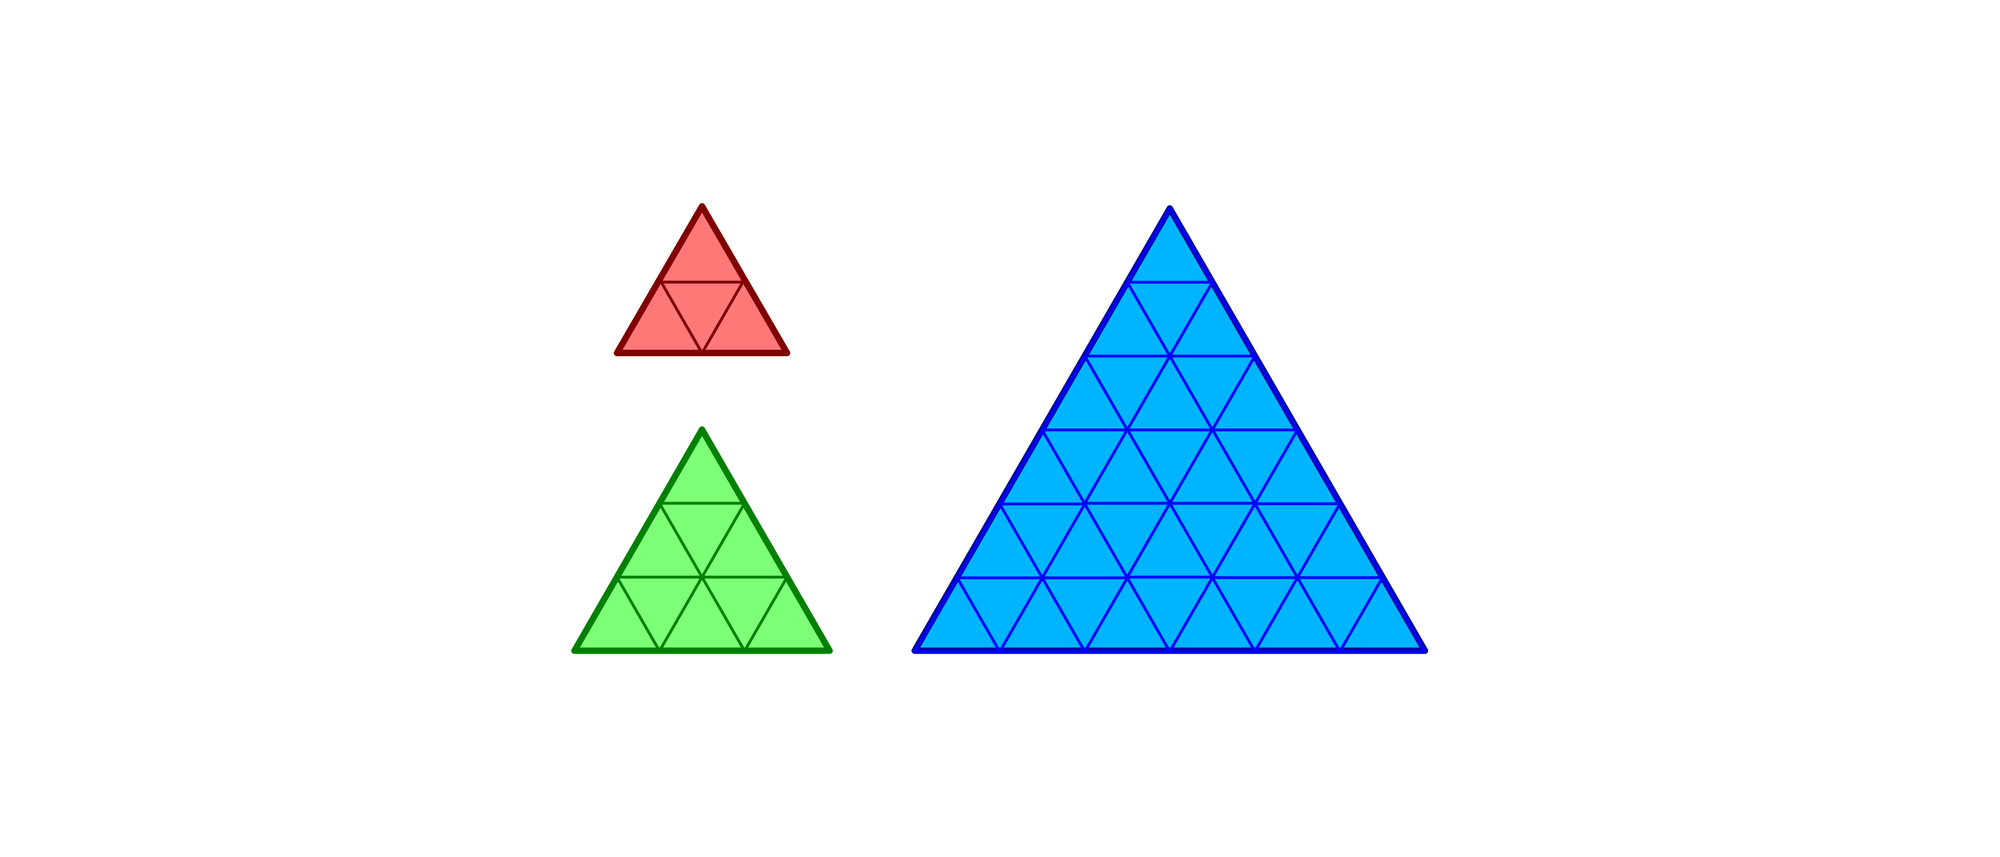 Kann man die Dreiecke zu einem größeren zusammensetzen? - Spektrum der  Wissenschaft